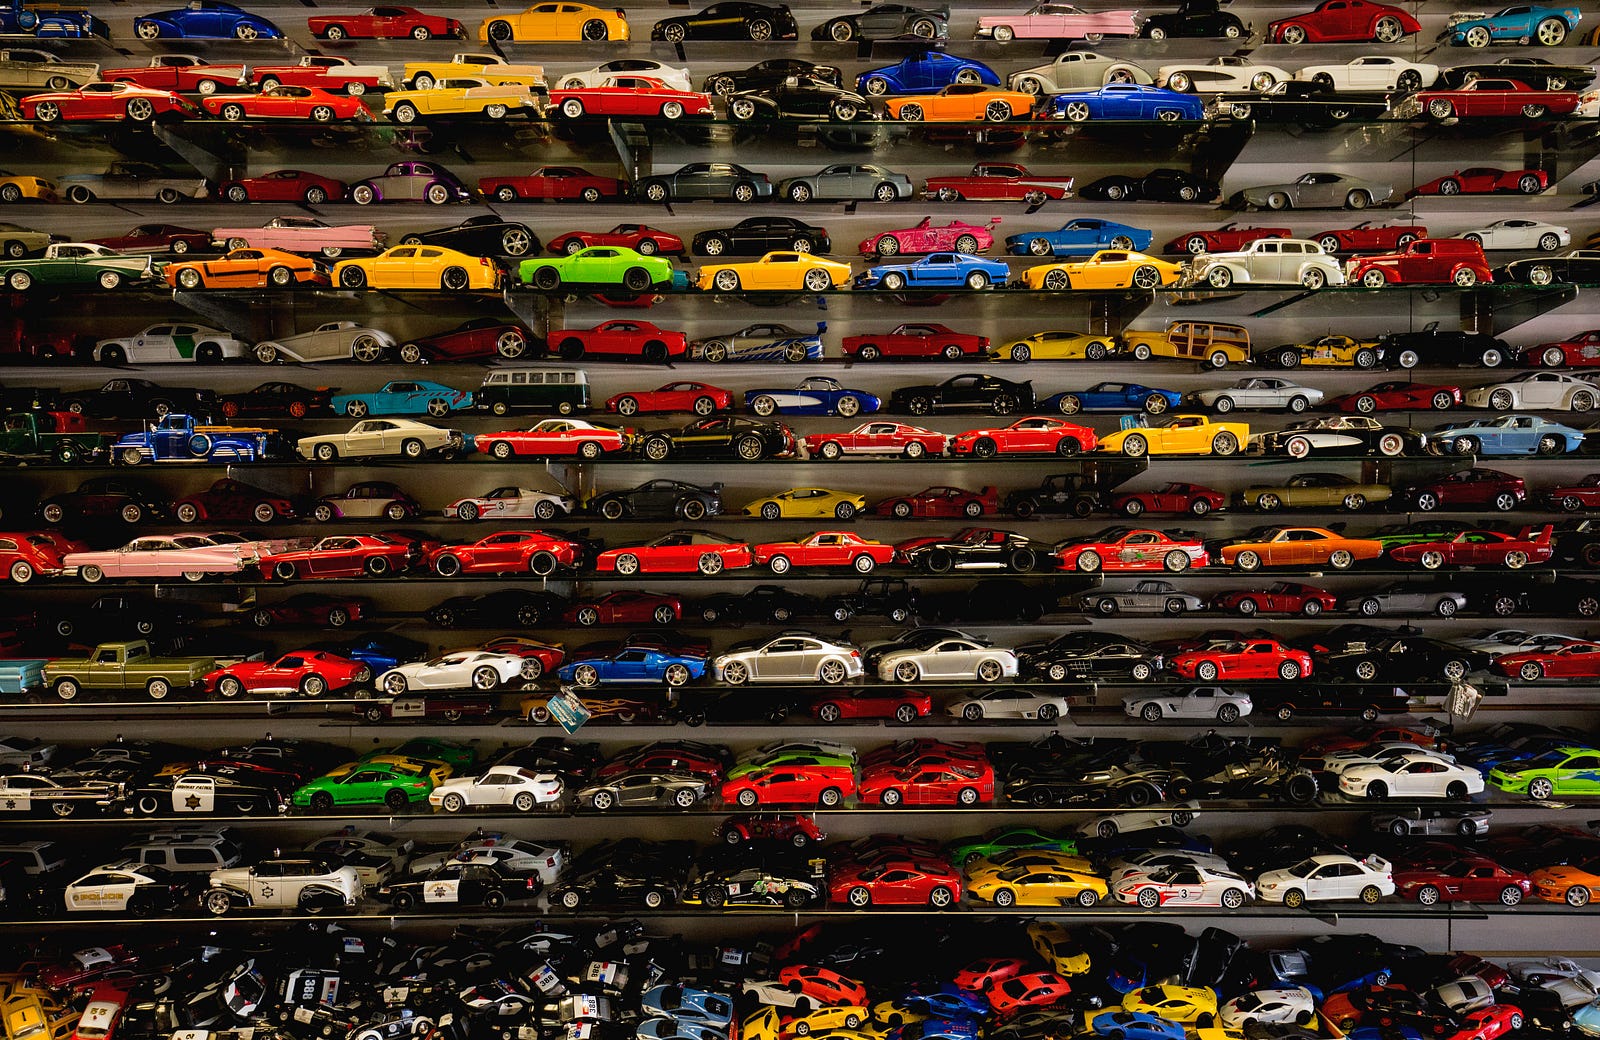 Model cars on shelves.